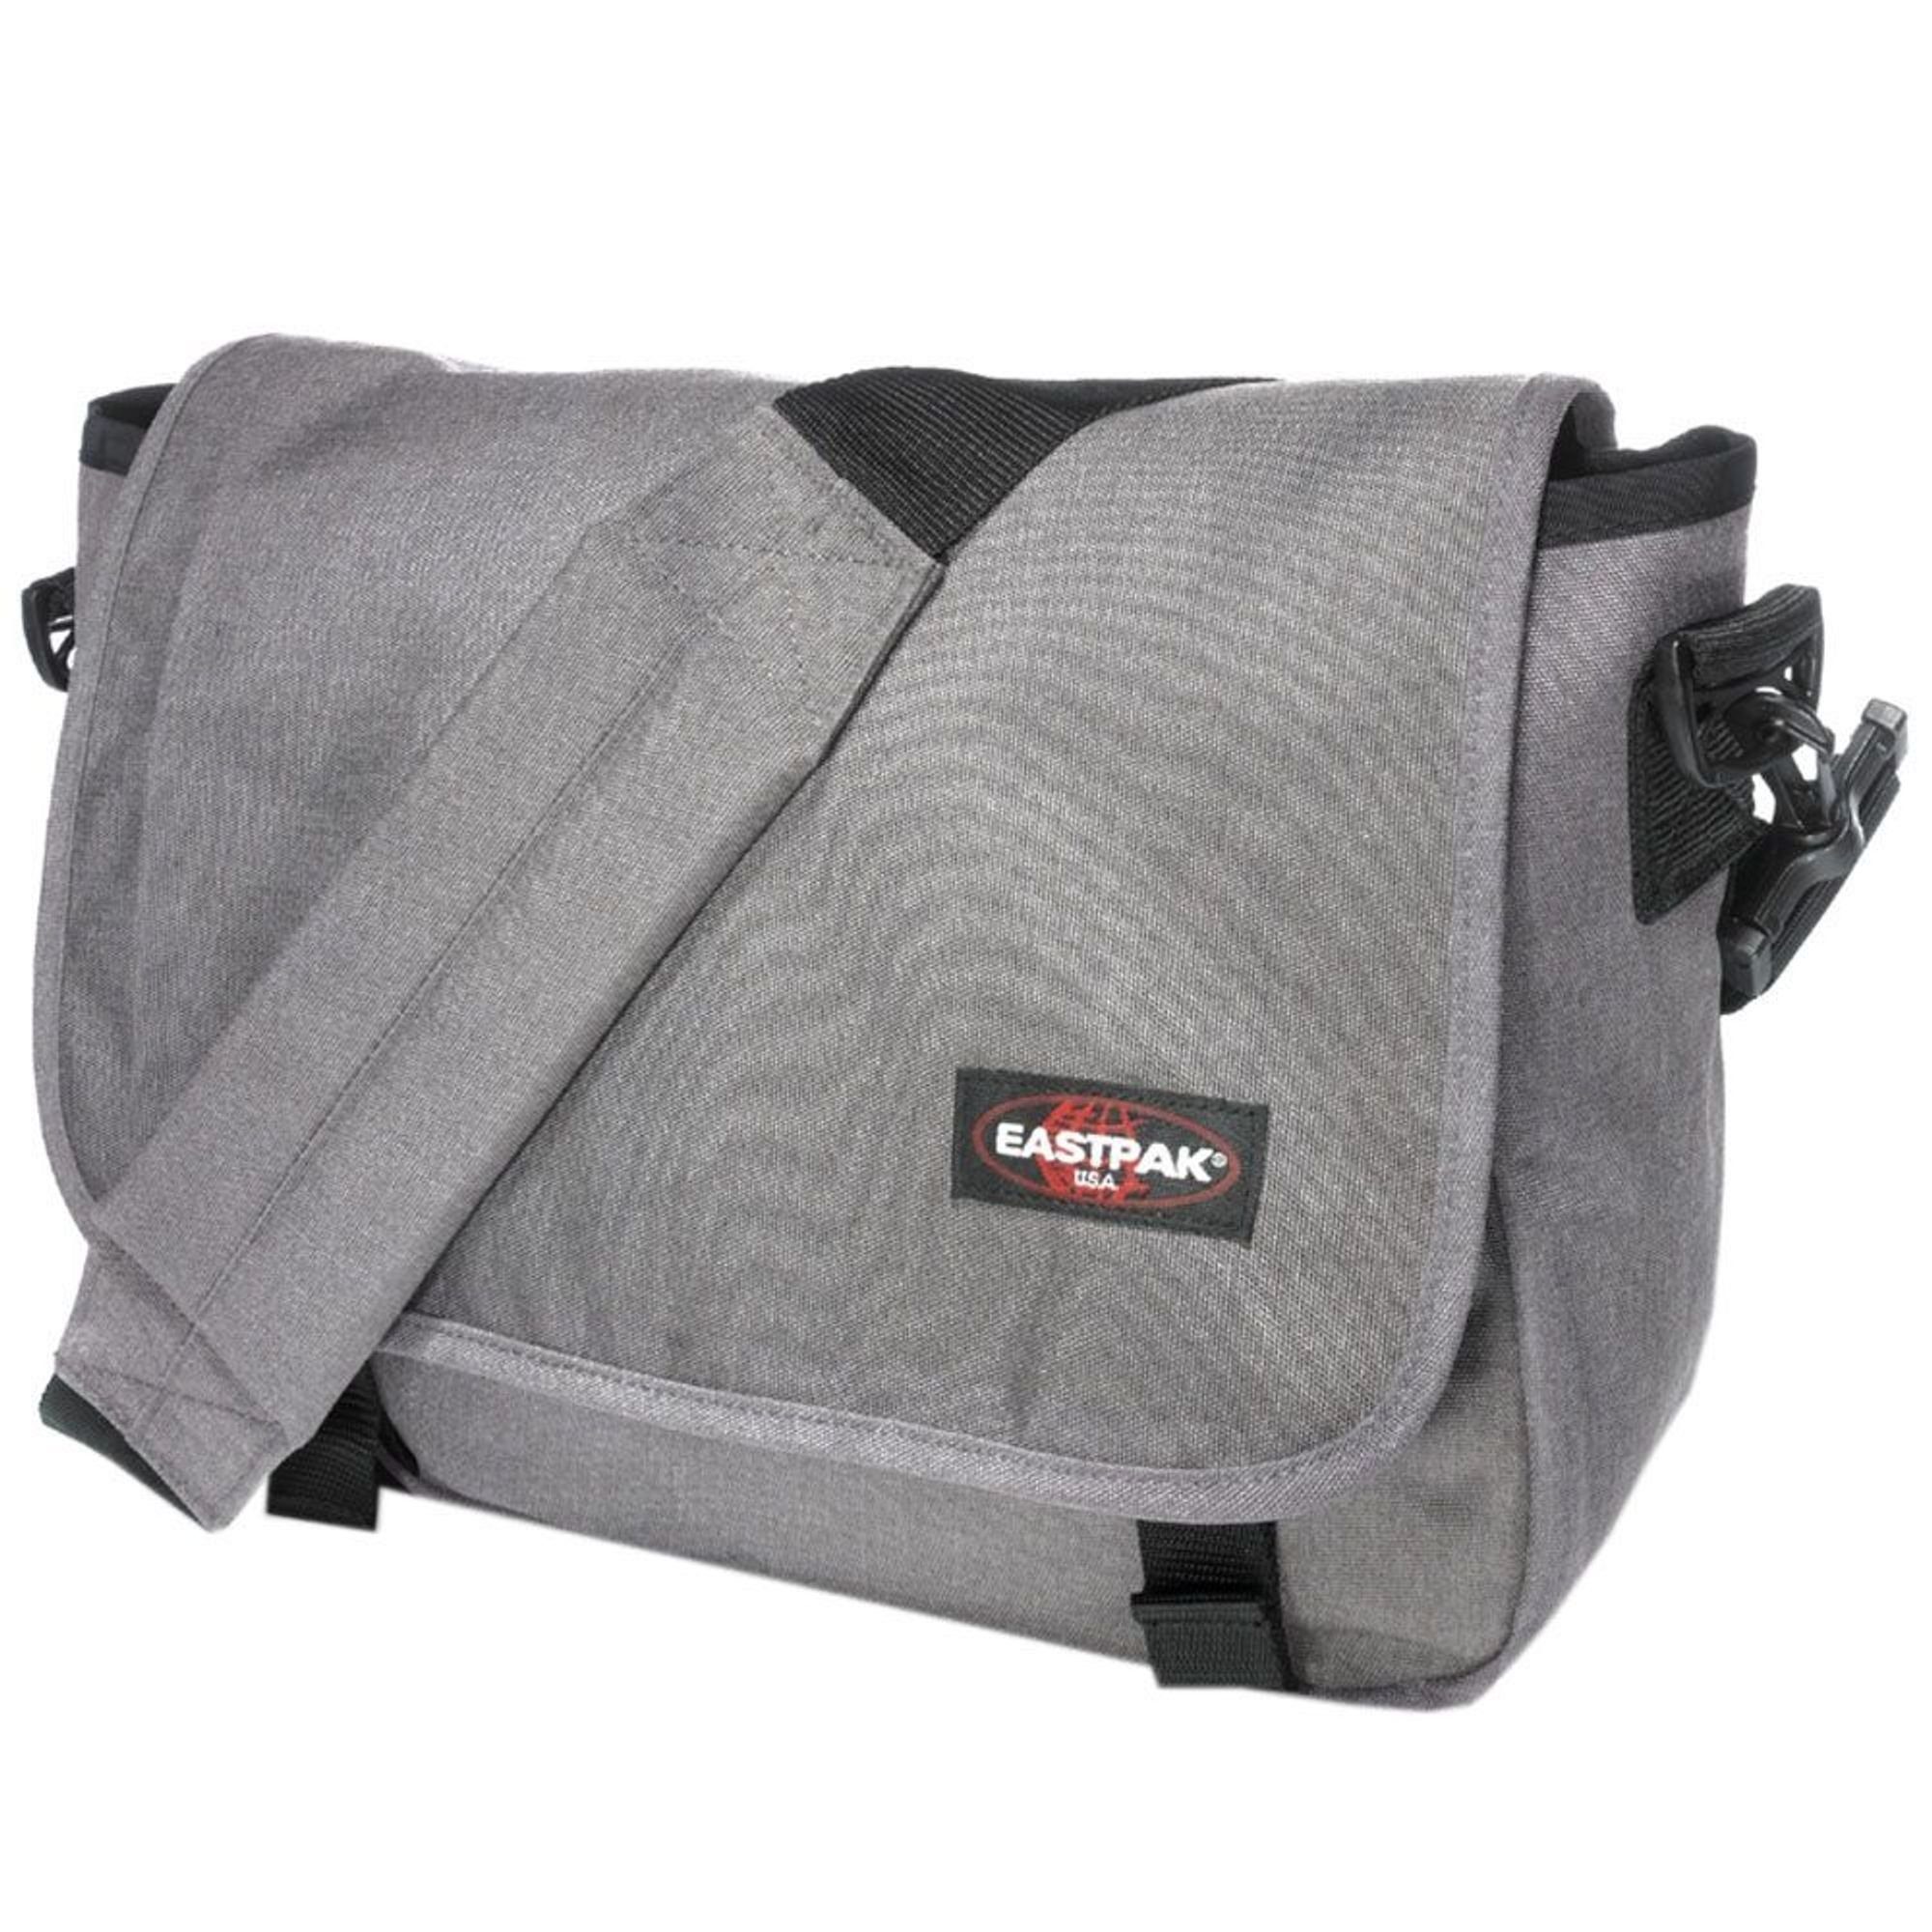 Eastpak Messenger Bag JR, Nylon sunday grey